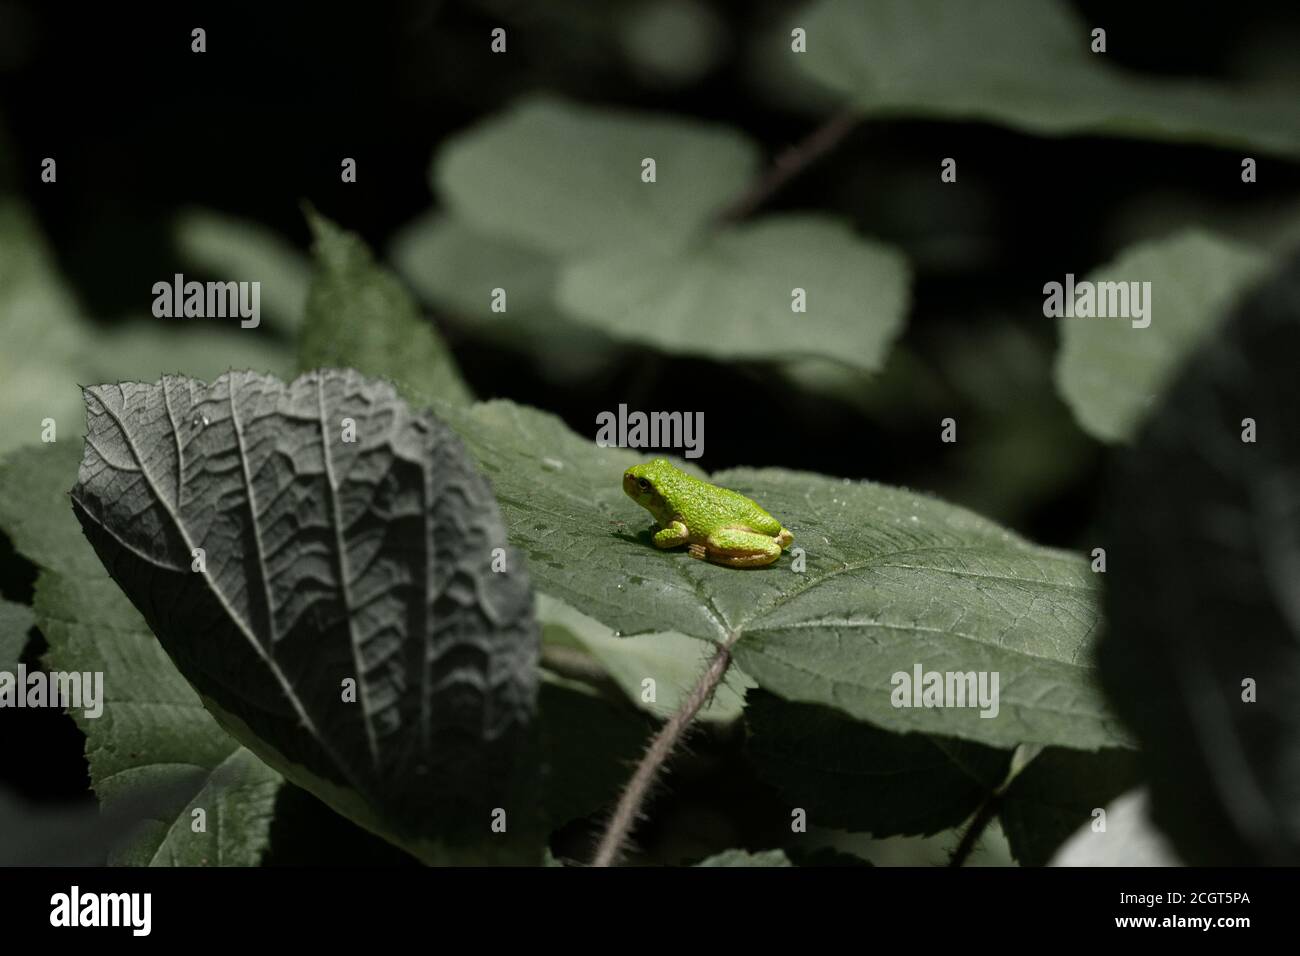 Immagine di Hyla versicolor, una piccola rana su una foglia di albero nel Maryland. Presa con un obiettivo macro al giorno. La rana riposava tranquillamente sulla foglia. Foto Stock